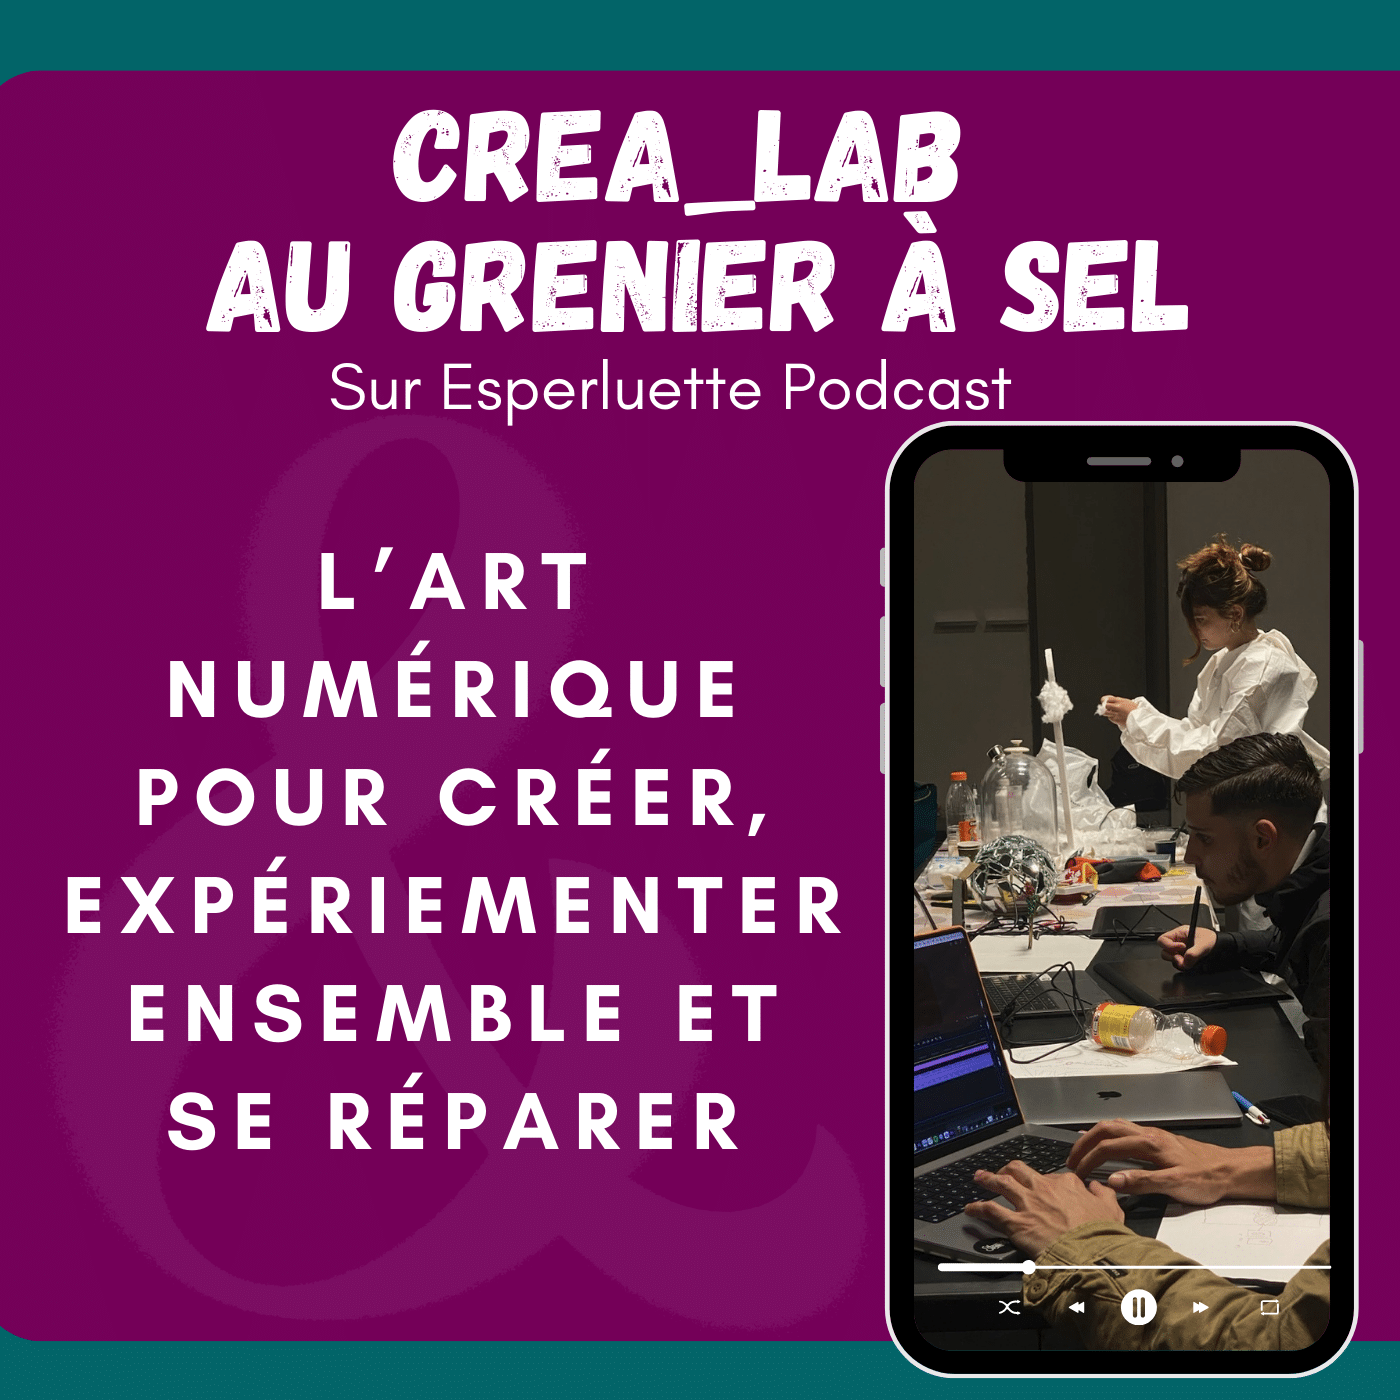 CREA_LAB, l’art numérique pour créer, expérimenter ensemble et se réparer